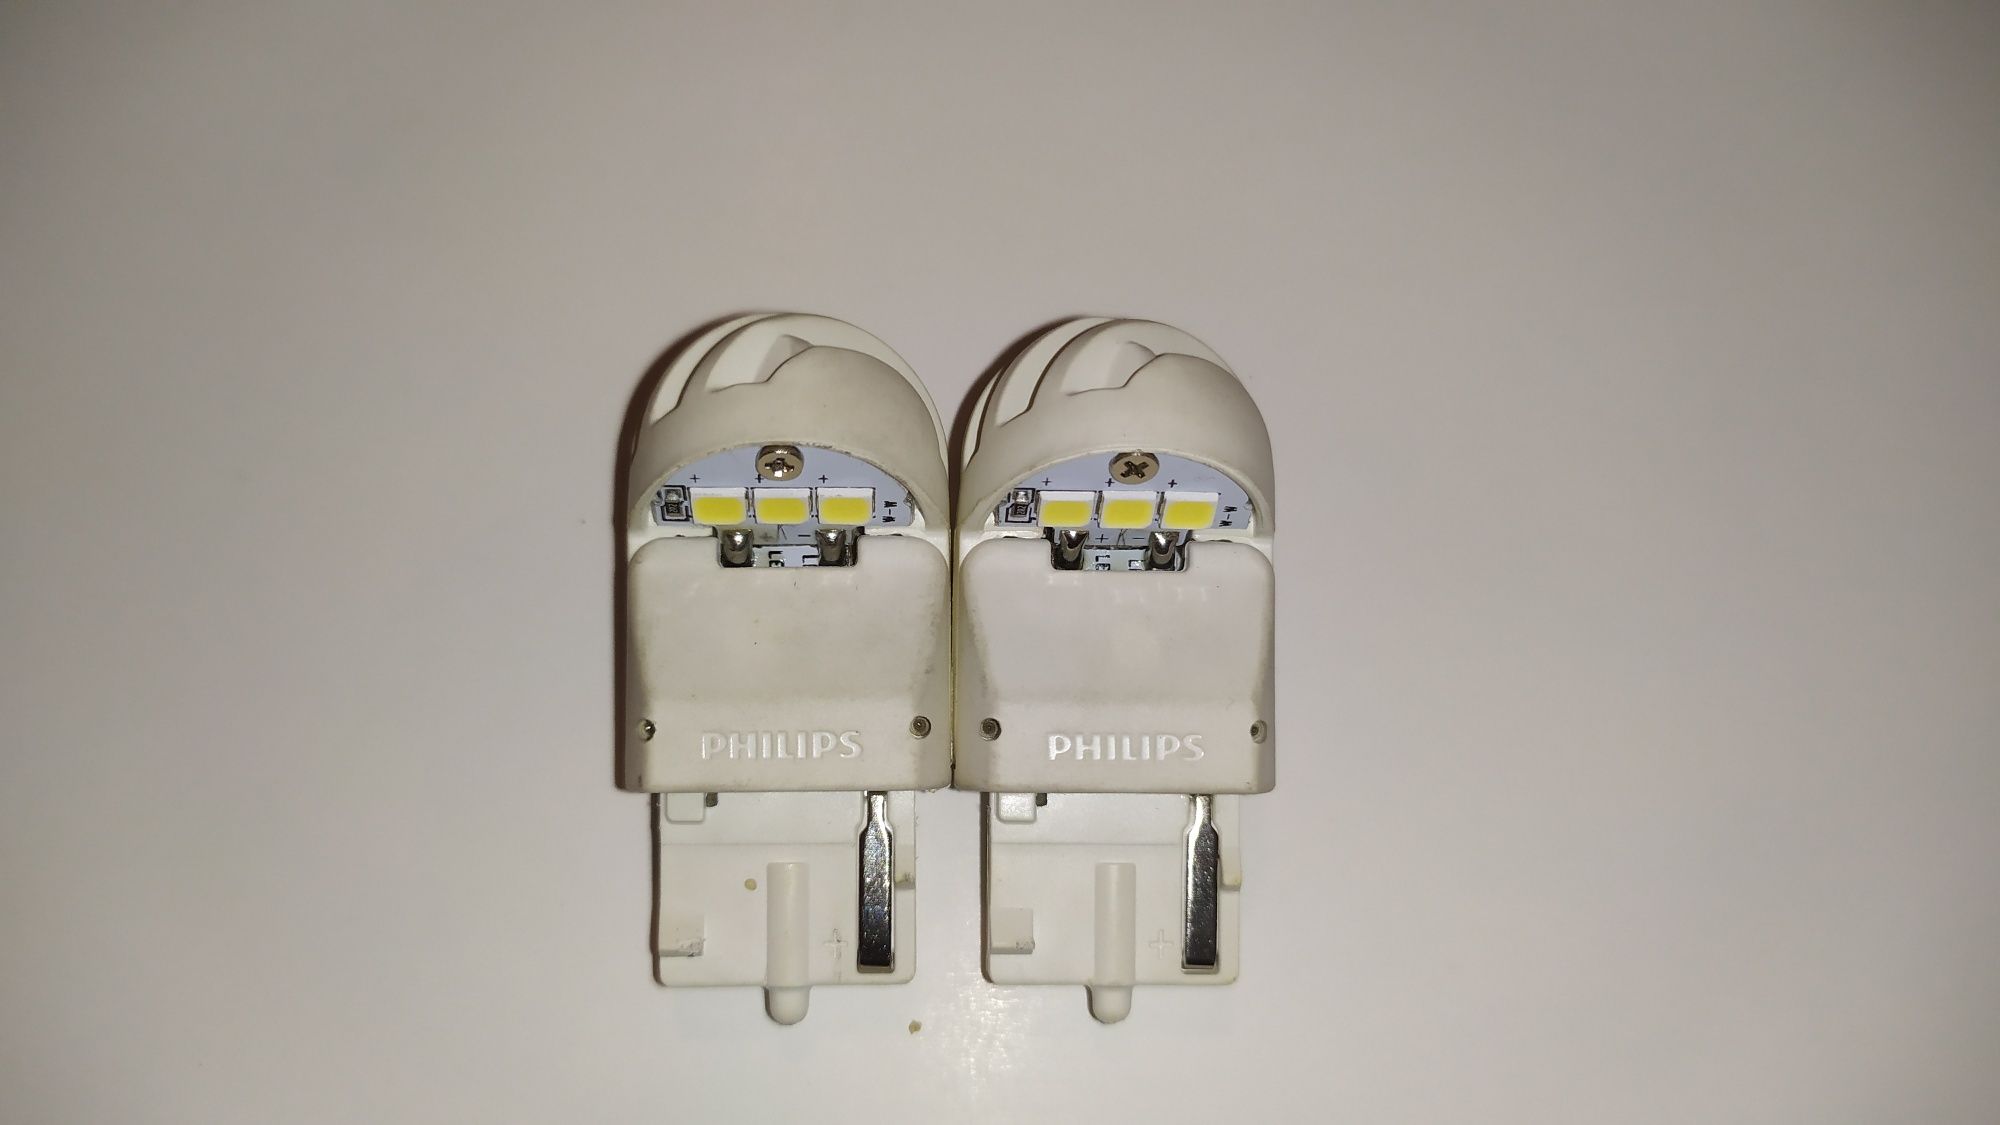 Żarówki Philips LED - white W21W